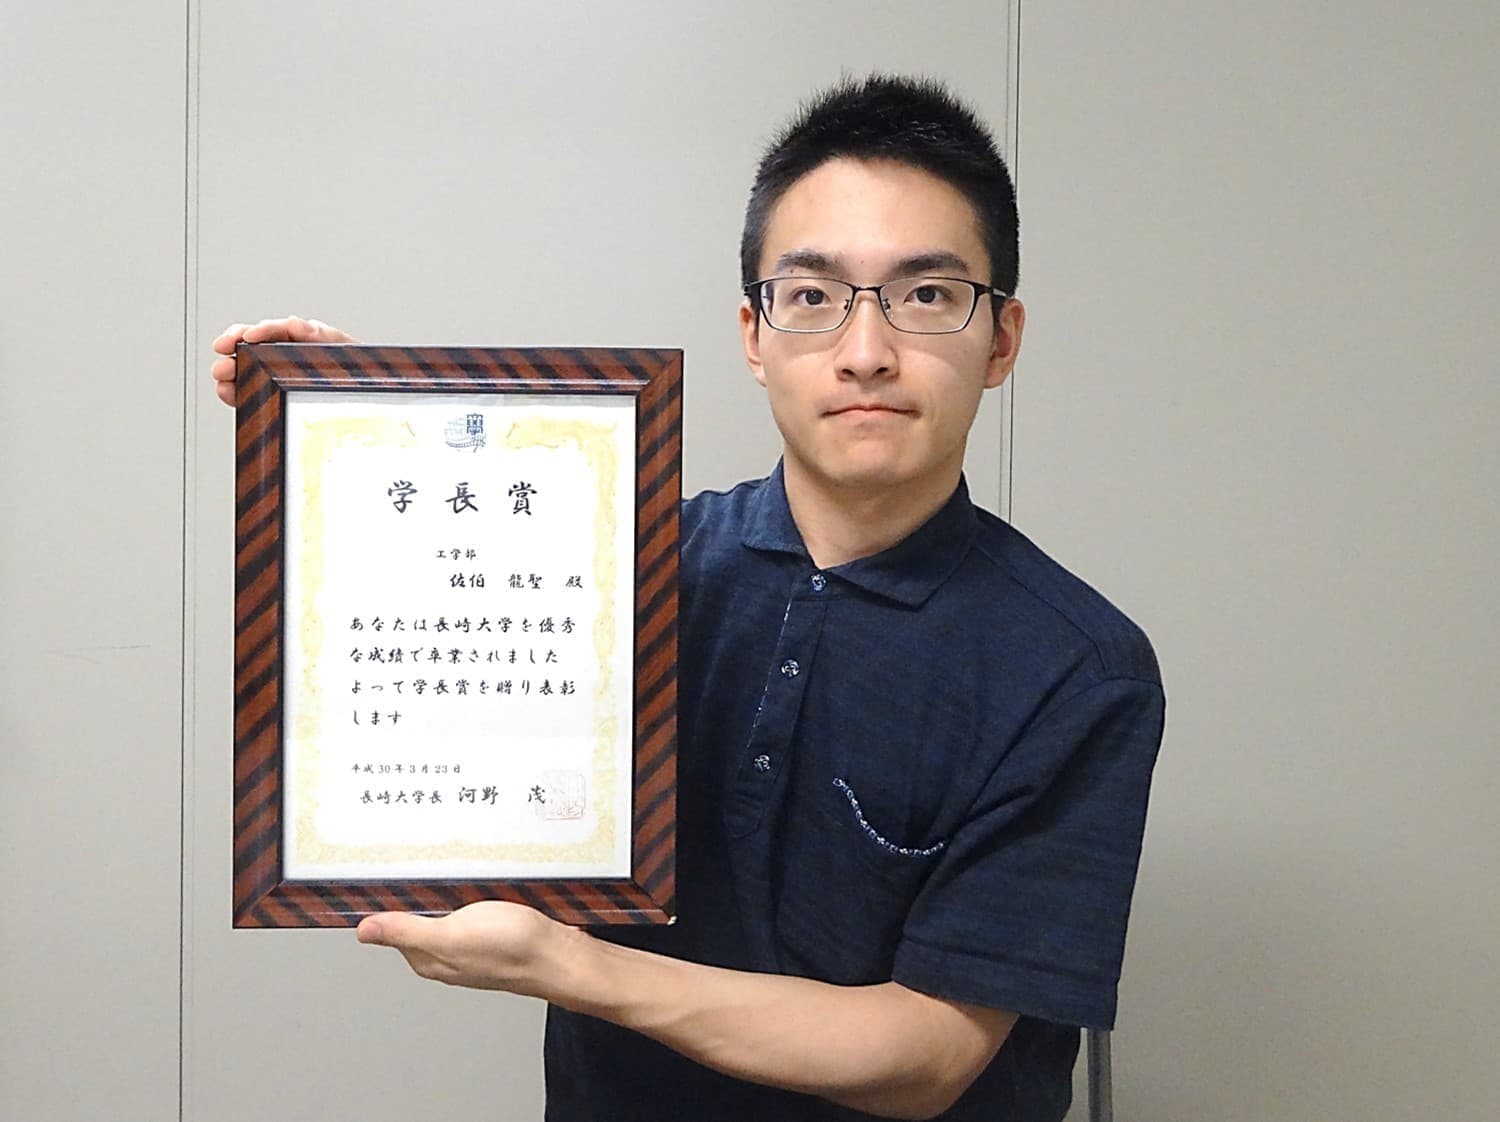 佐伯龍聖君(B4)が、工学部・総代として、長崎大学卒業証書・学位記授与式に出席しました。また、学長賞（学業分野）を受賞しました。2018/03/23